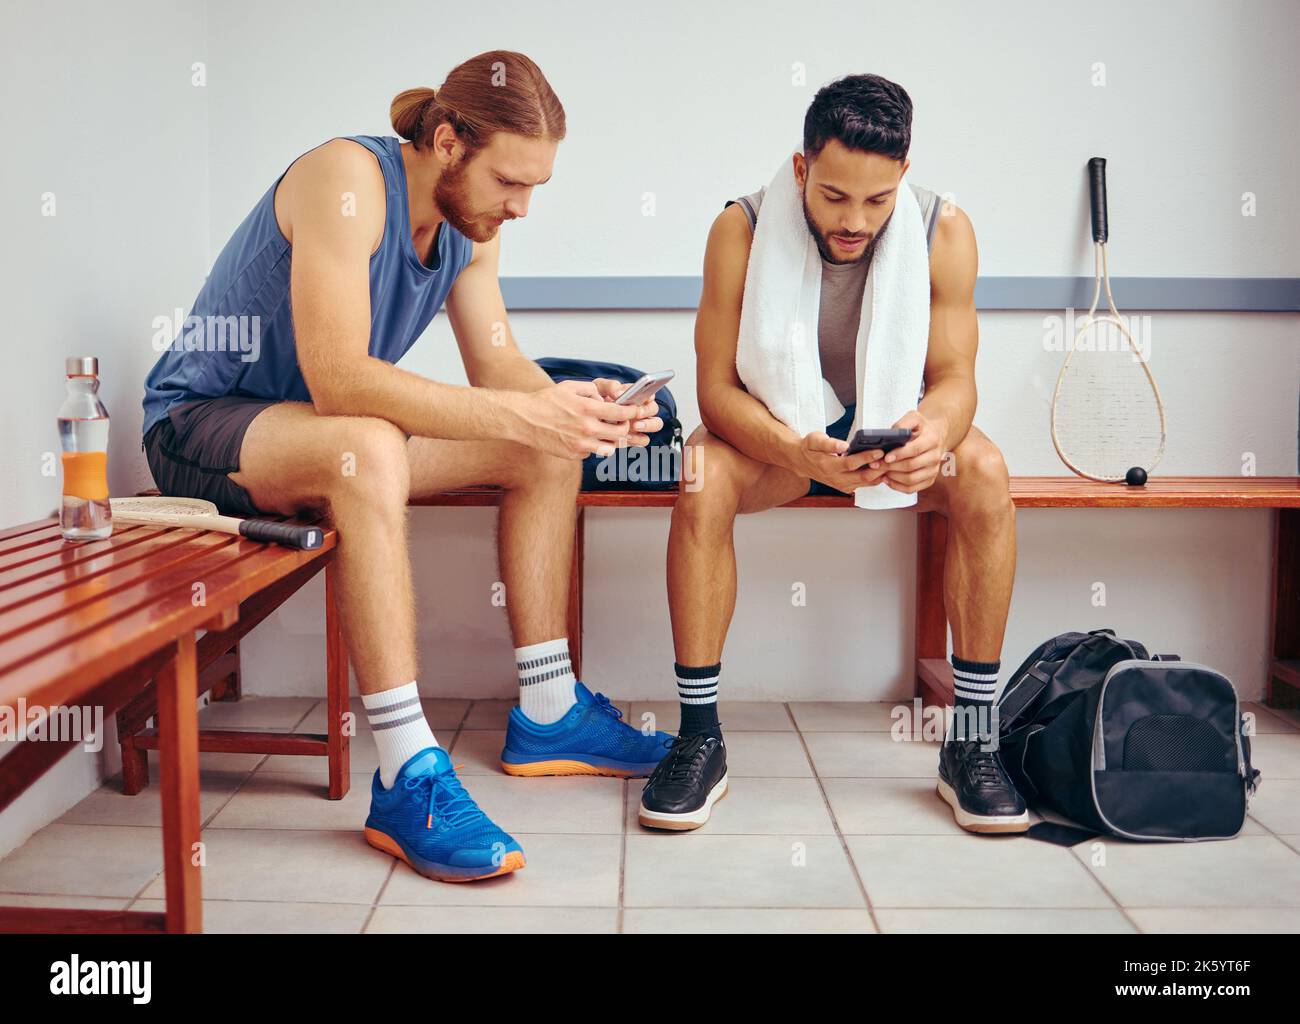 Dos jugadores que utilizan sus teléfonos móviles juntos. Jóvenes jugadores de squash leyendo mensajes de texto en sus smartphones juntos. Amigos relajándose en un gimnasio Foto de stock